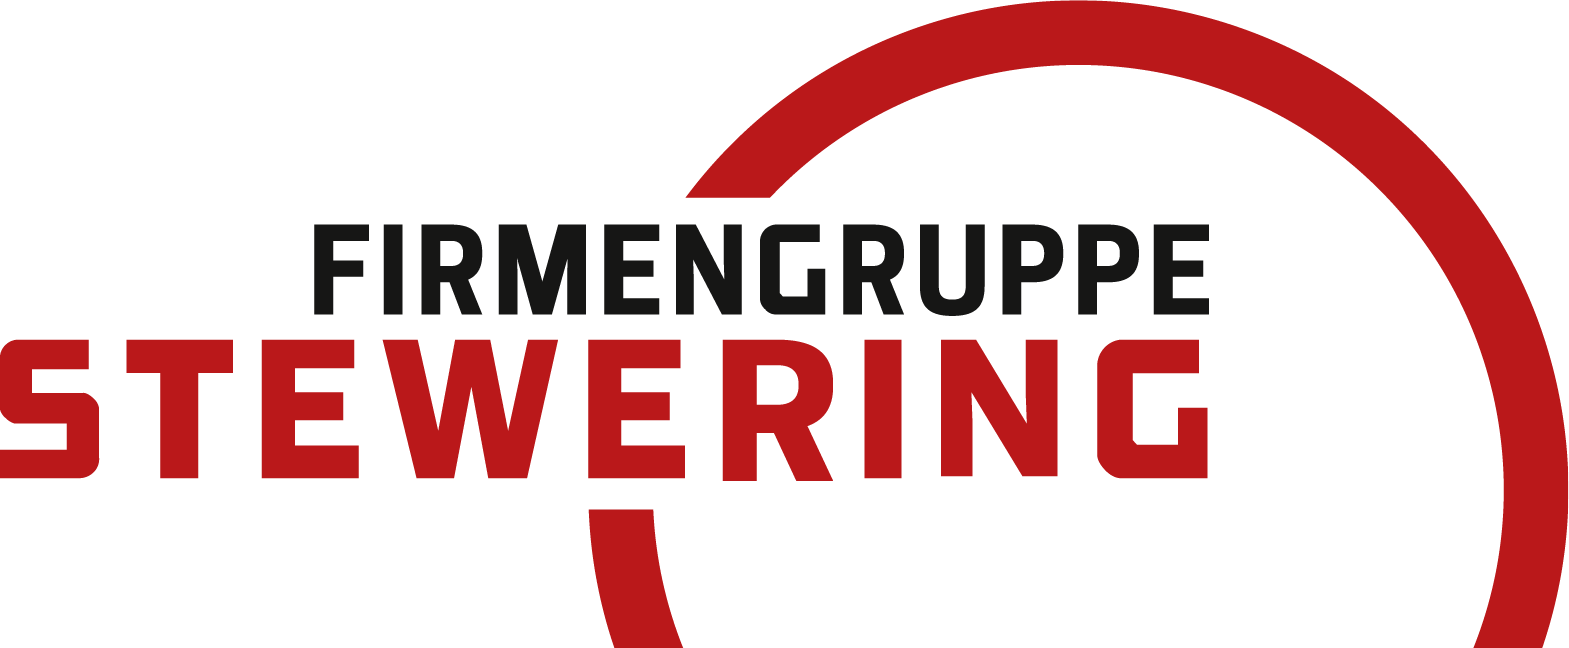 stewering-gruppe-logo-transparent